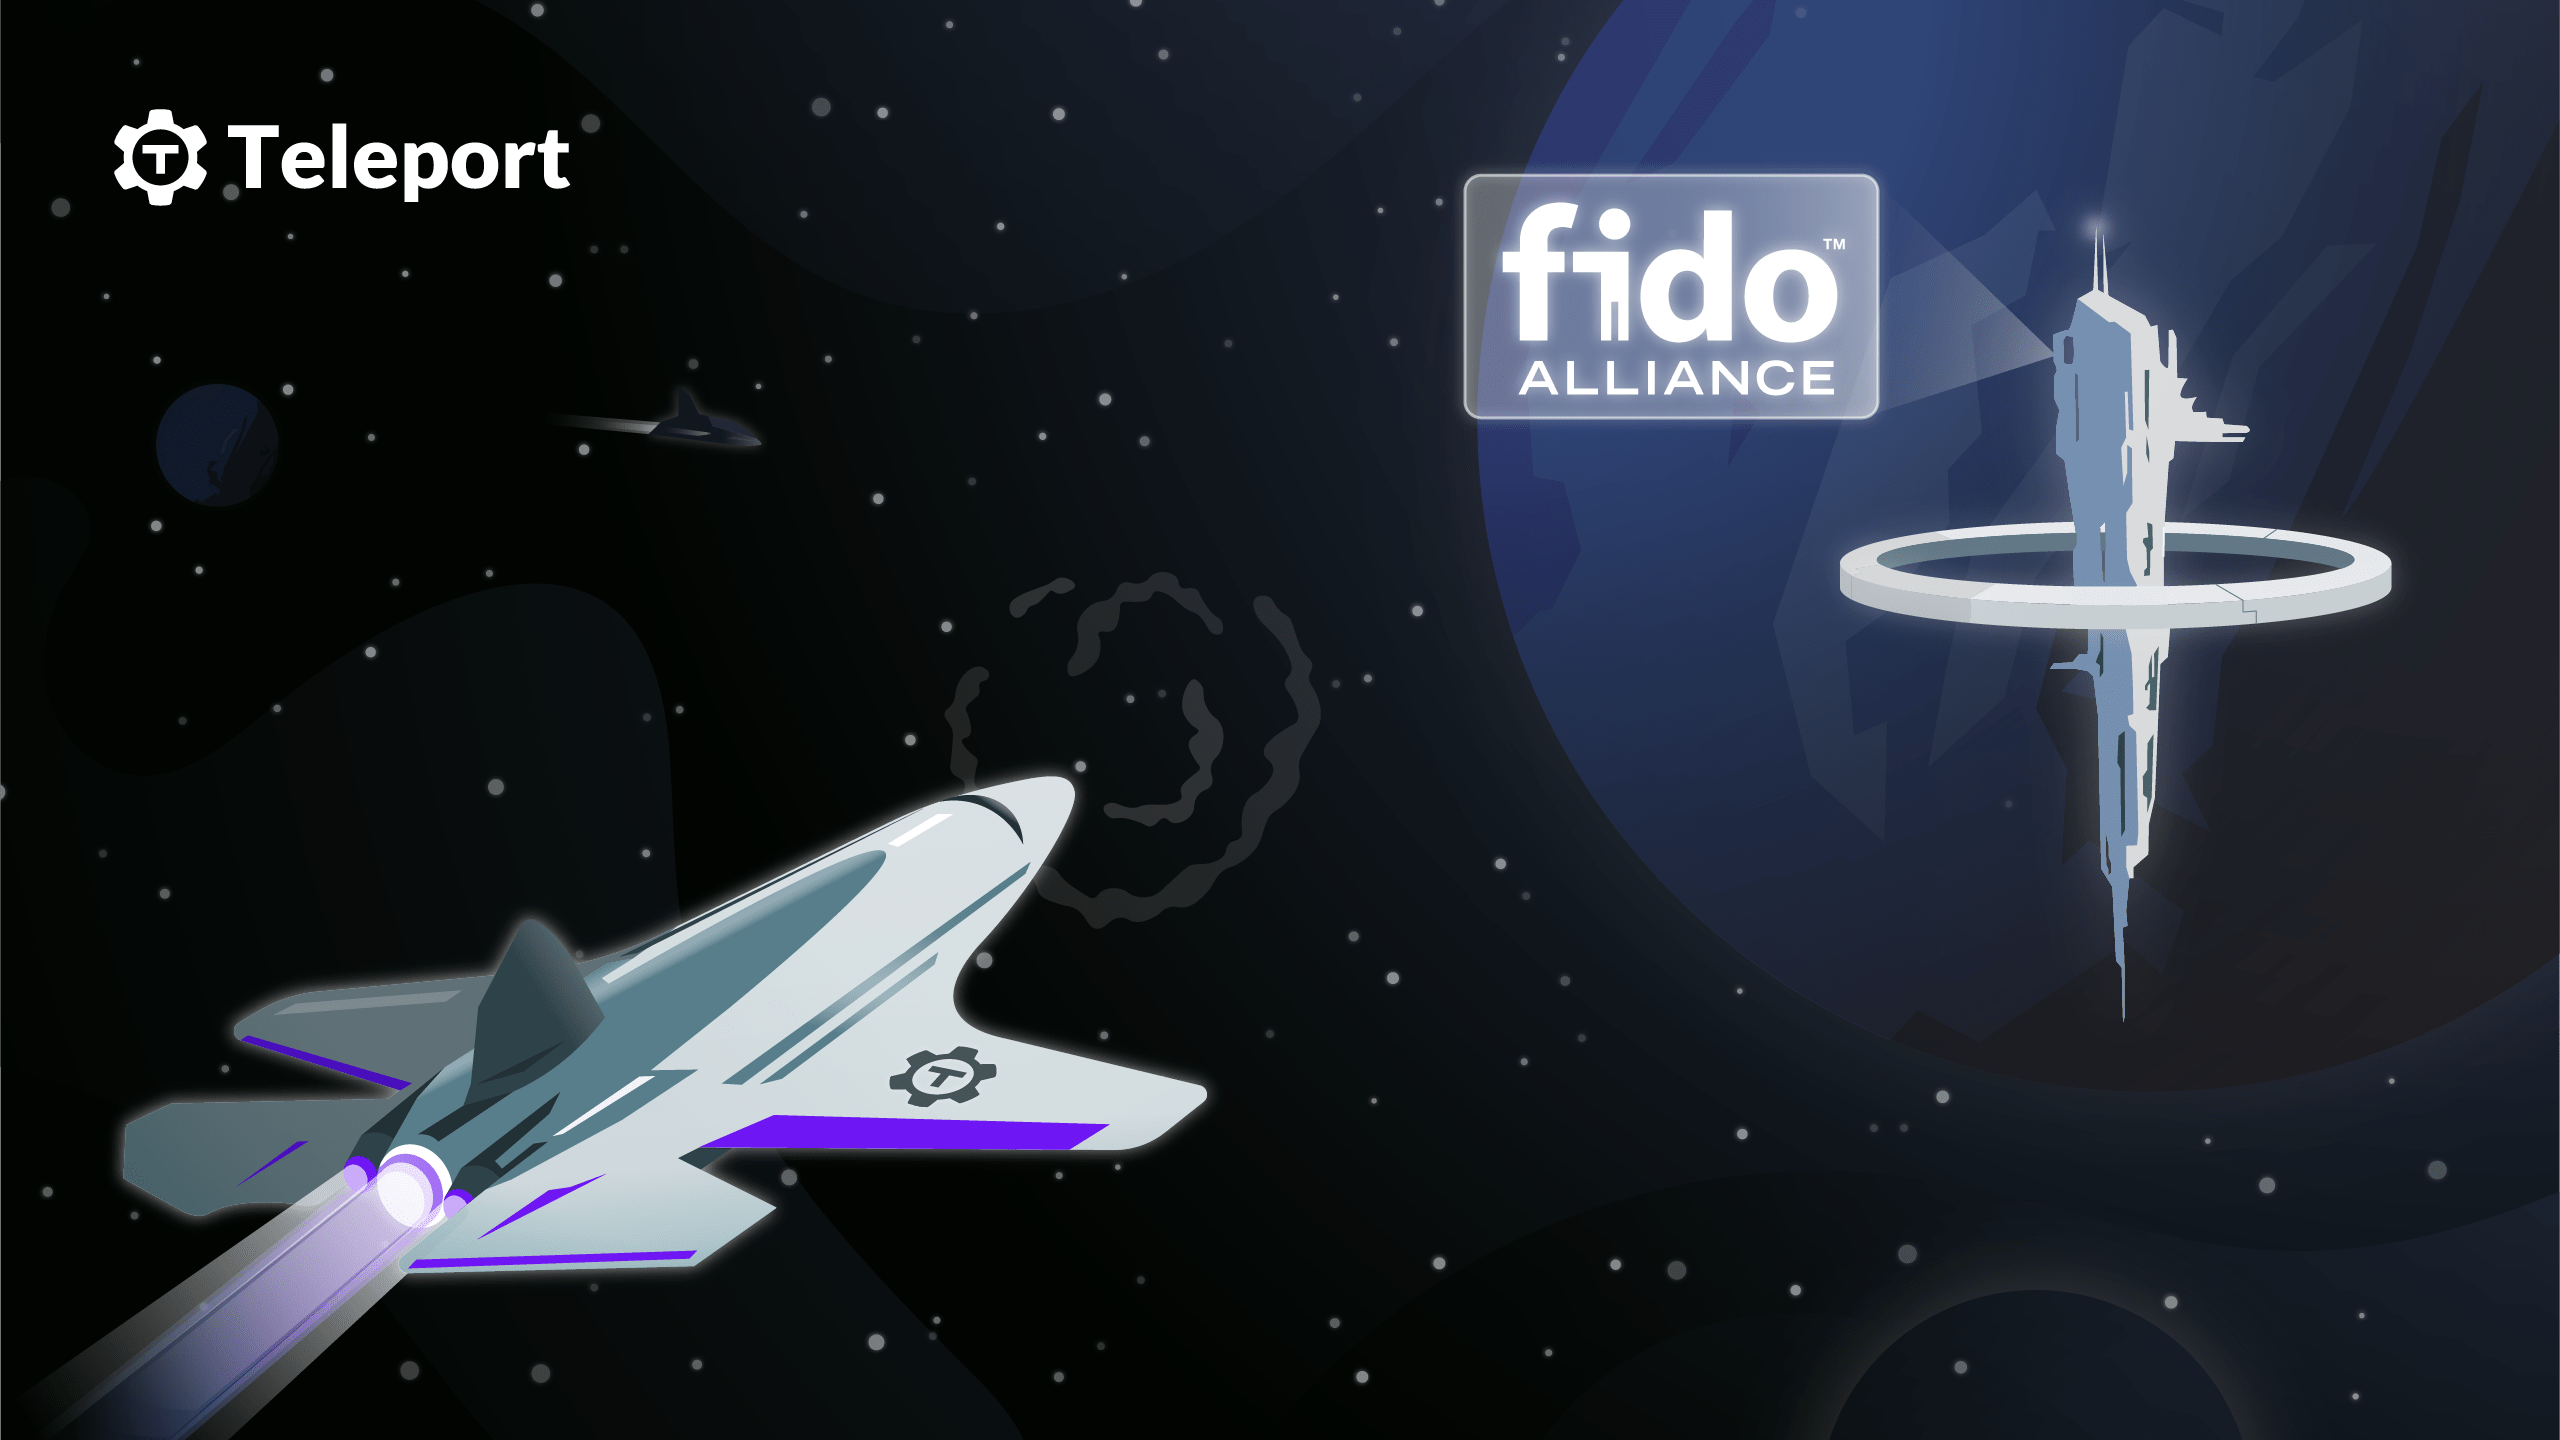 Teleport join FIDO Alliance